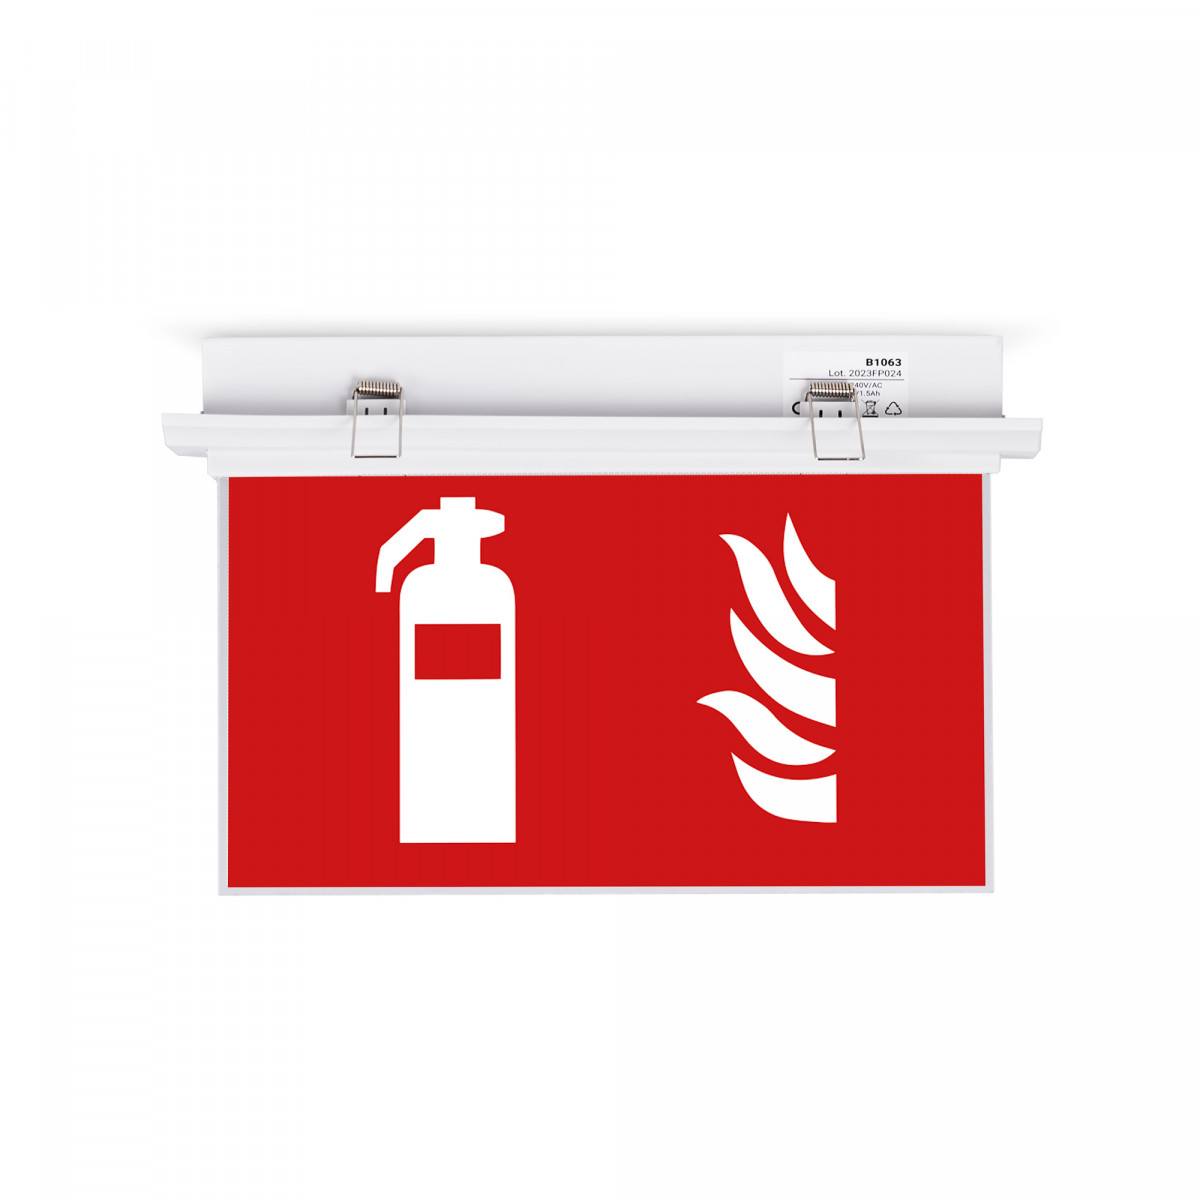 Luz de emergência embutida permanente com o pictograma "Extintor de incêndio".